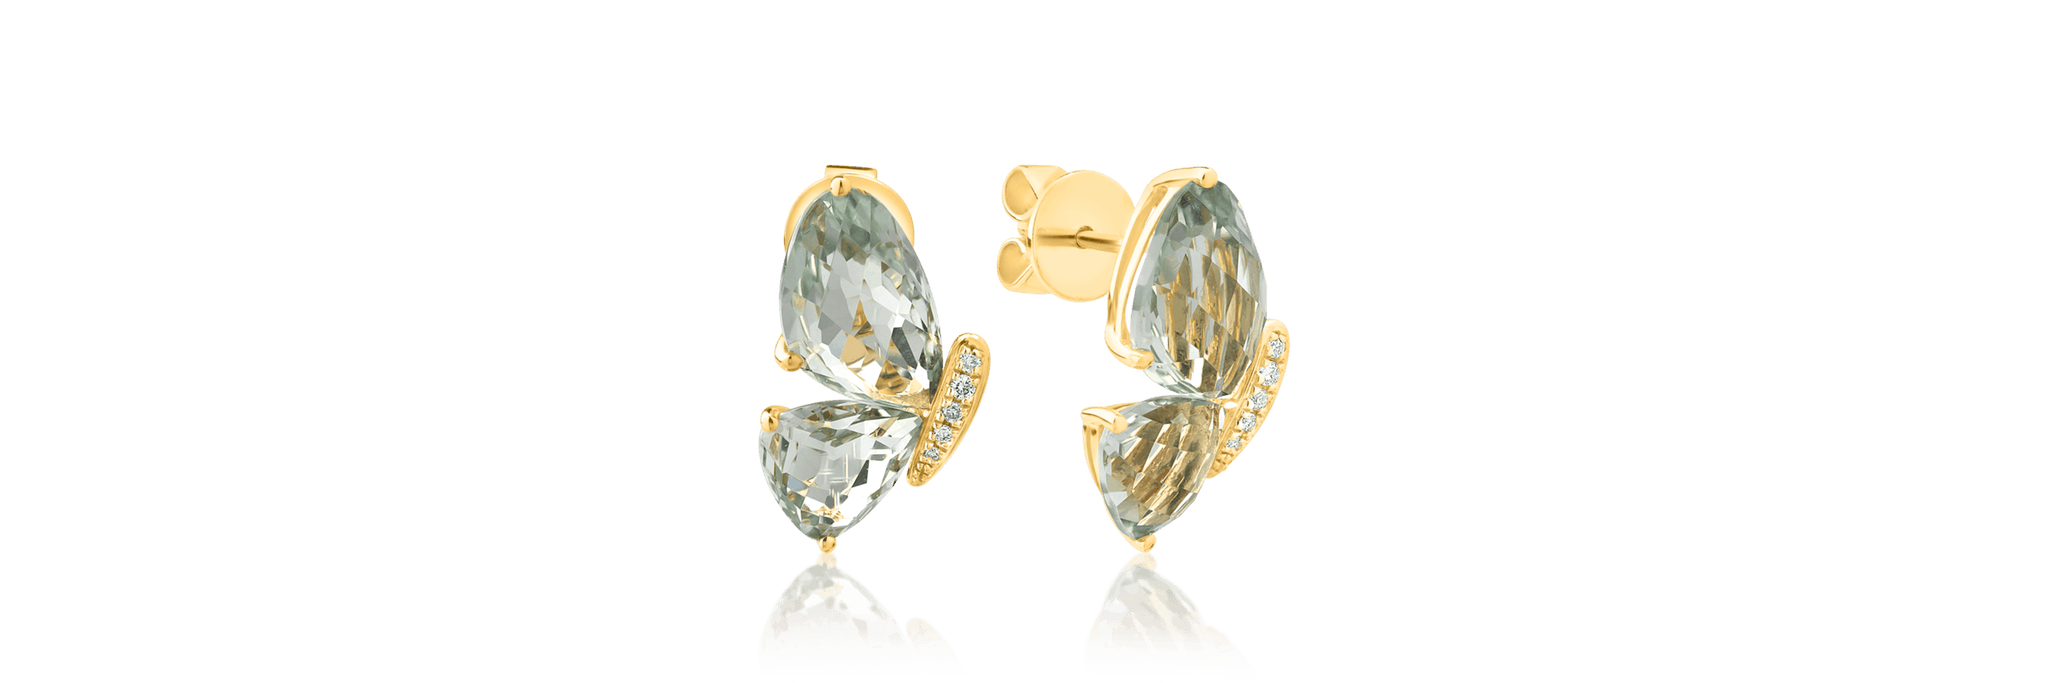 Cercei fluture din aur galben de 18K cu ametiste verzi de 8.5ct si diamante de 0.06ct